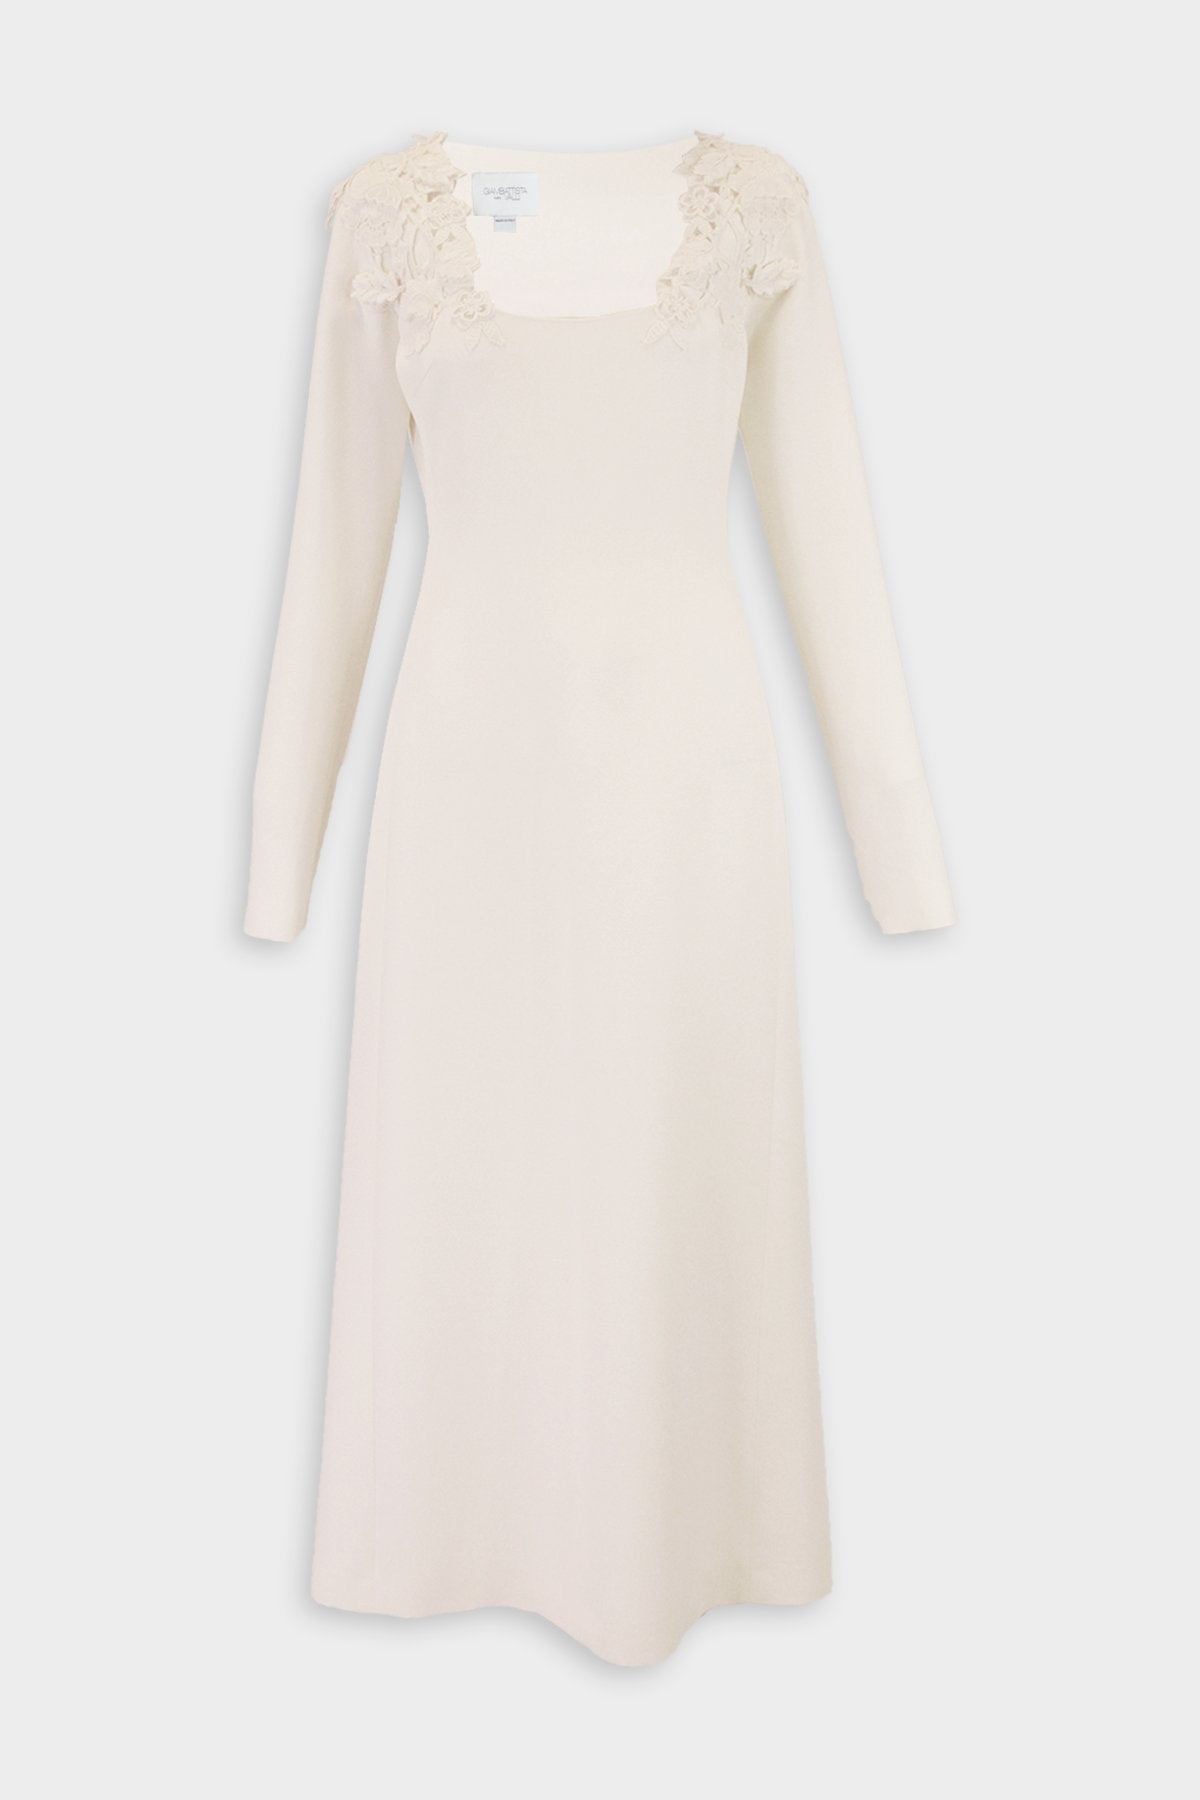 Lace Shoulder, Long Sleeve Long Dress in Ivory - shop-olivia.com